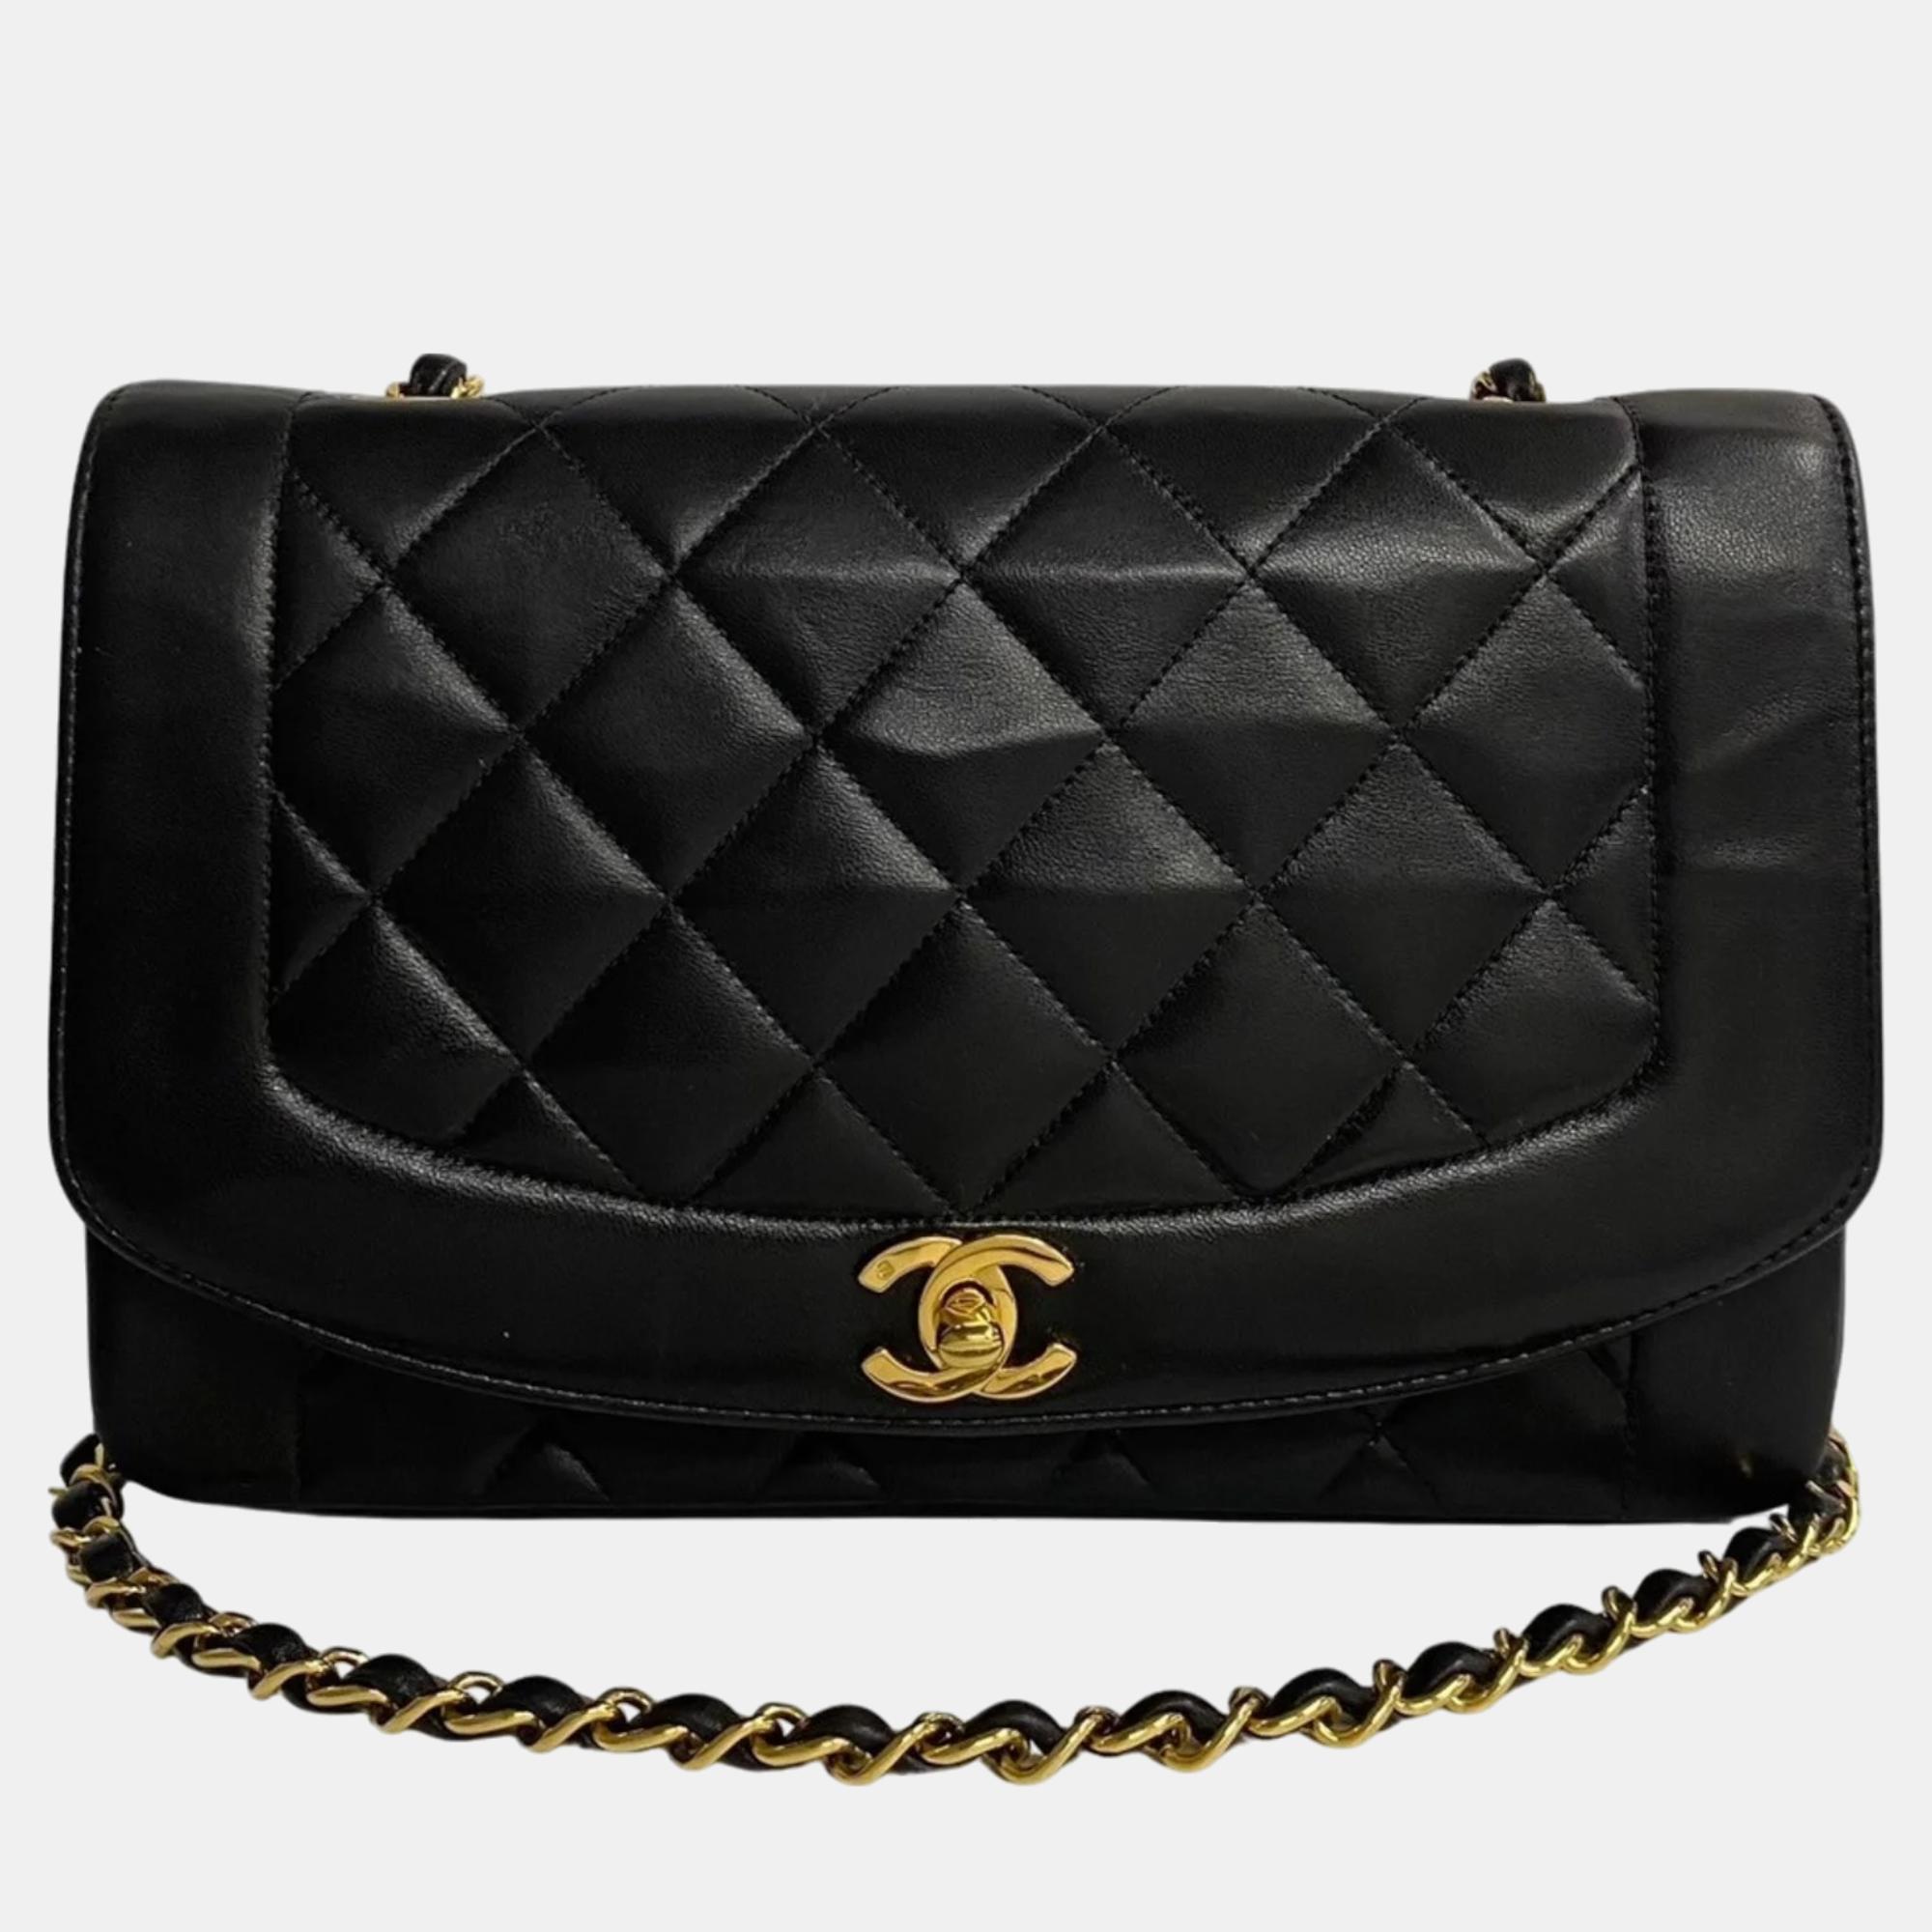 Chanel black lambskin leather vintage diana shoulder bag